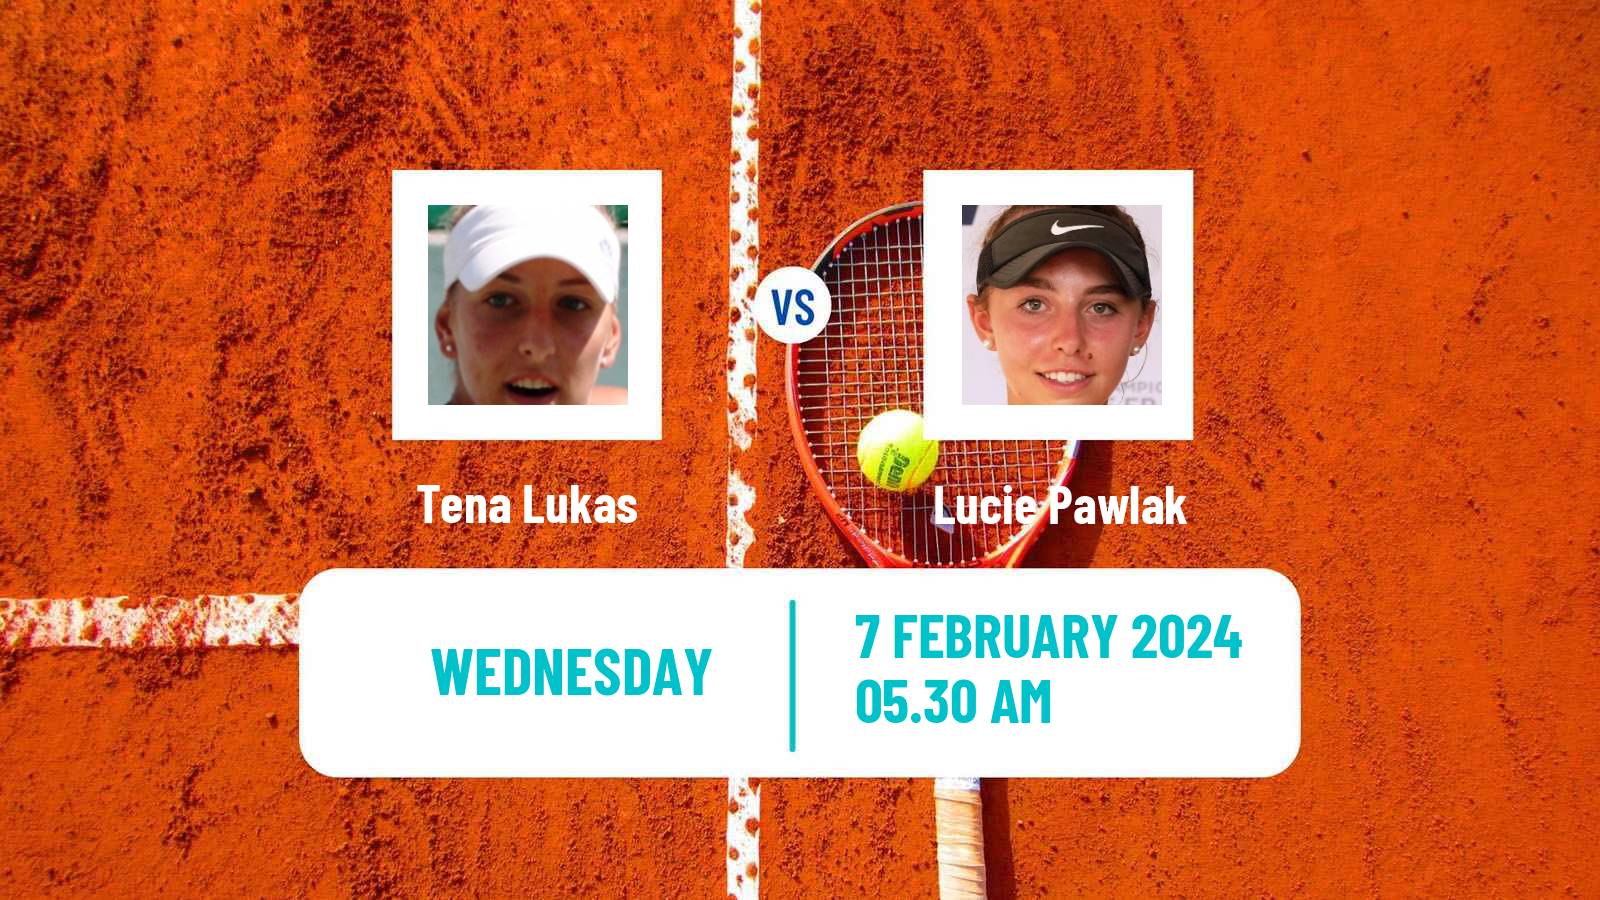 Tennis ITF W35 Antalya 2 Women Tena Lukas - Lucie Pawlak